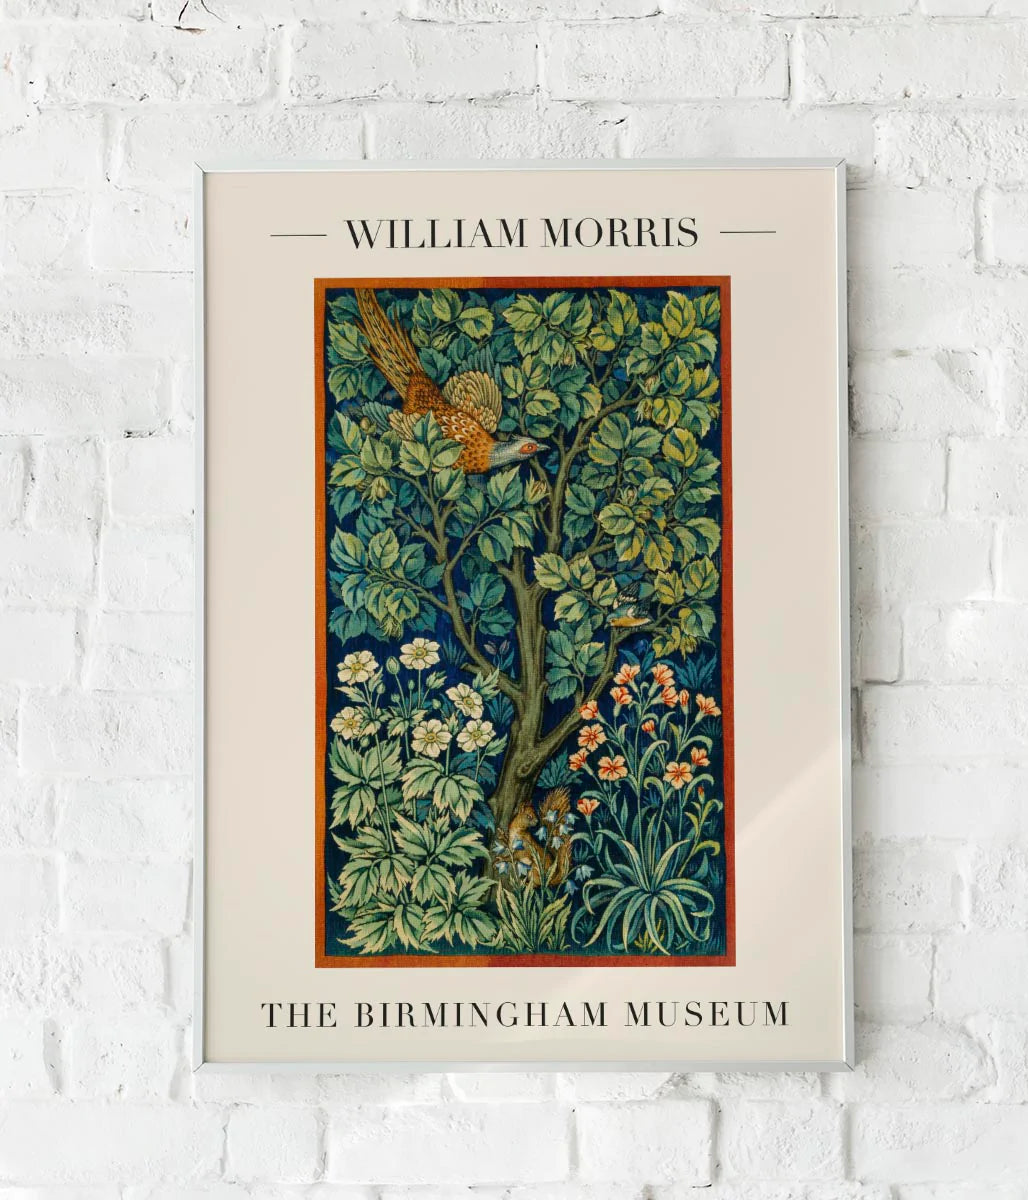 William Morris Peacock Pheasant Art Exhibition Poster